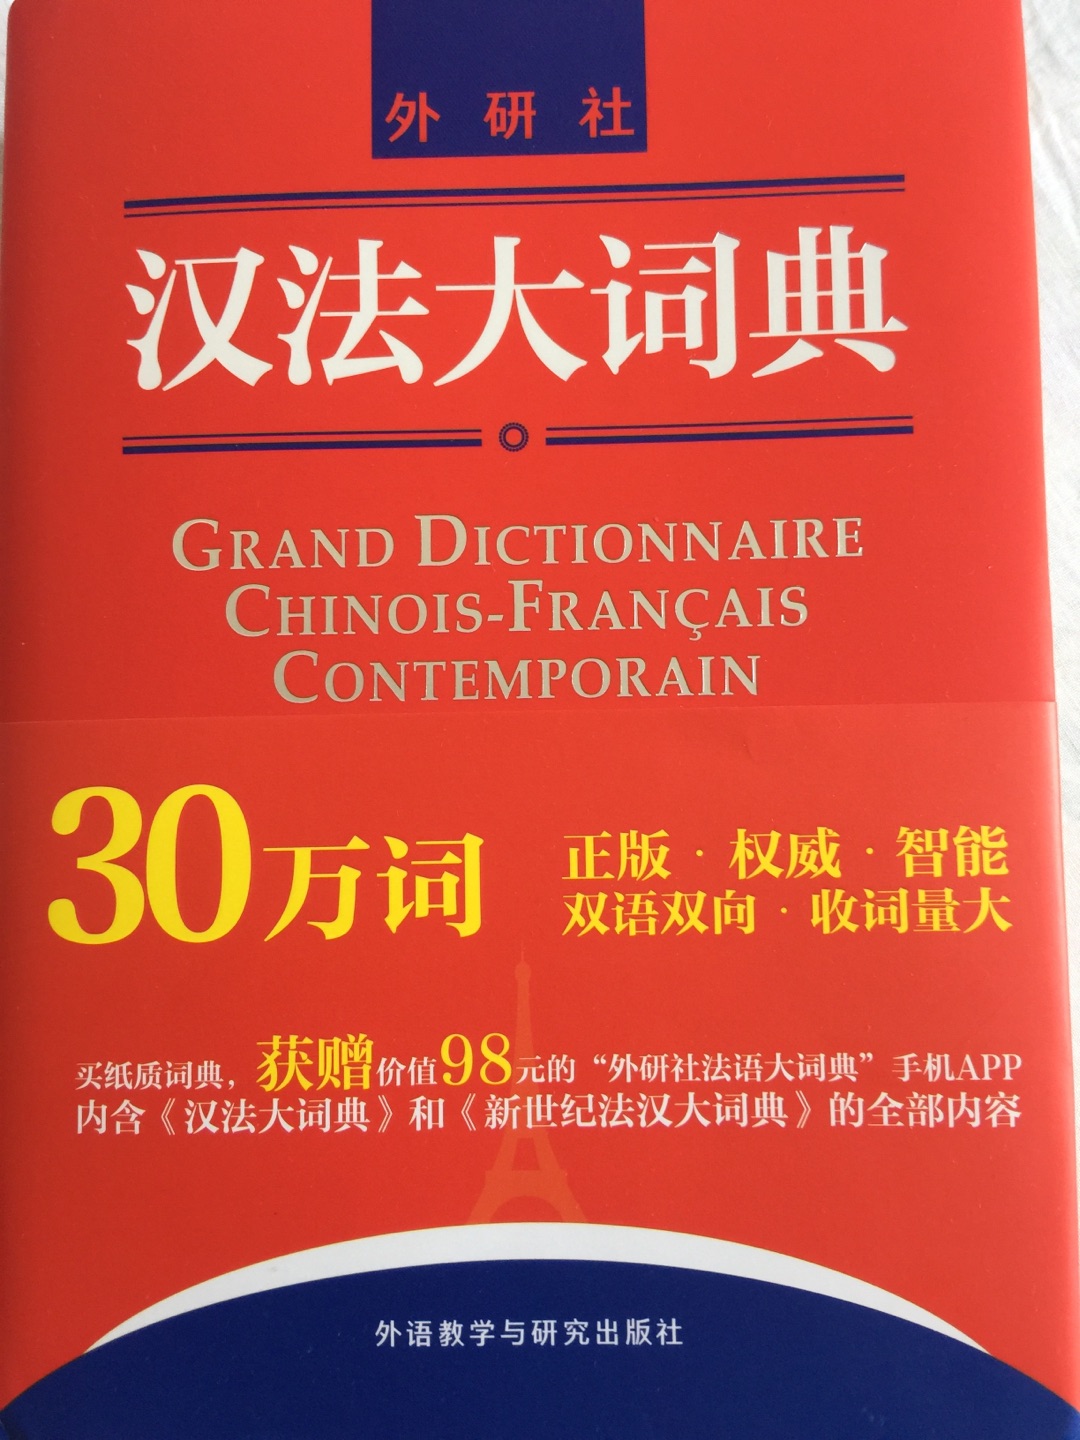 翻译考试要用，比想象中大的一本，但是印刷很棒，很有帮助